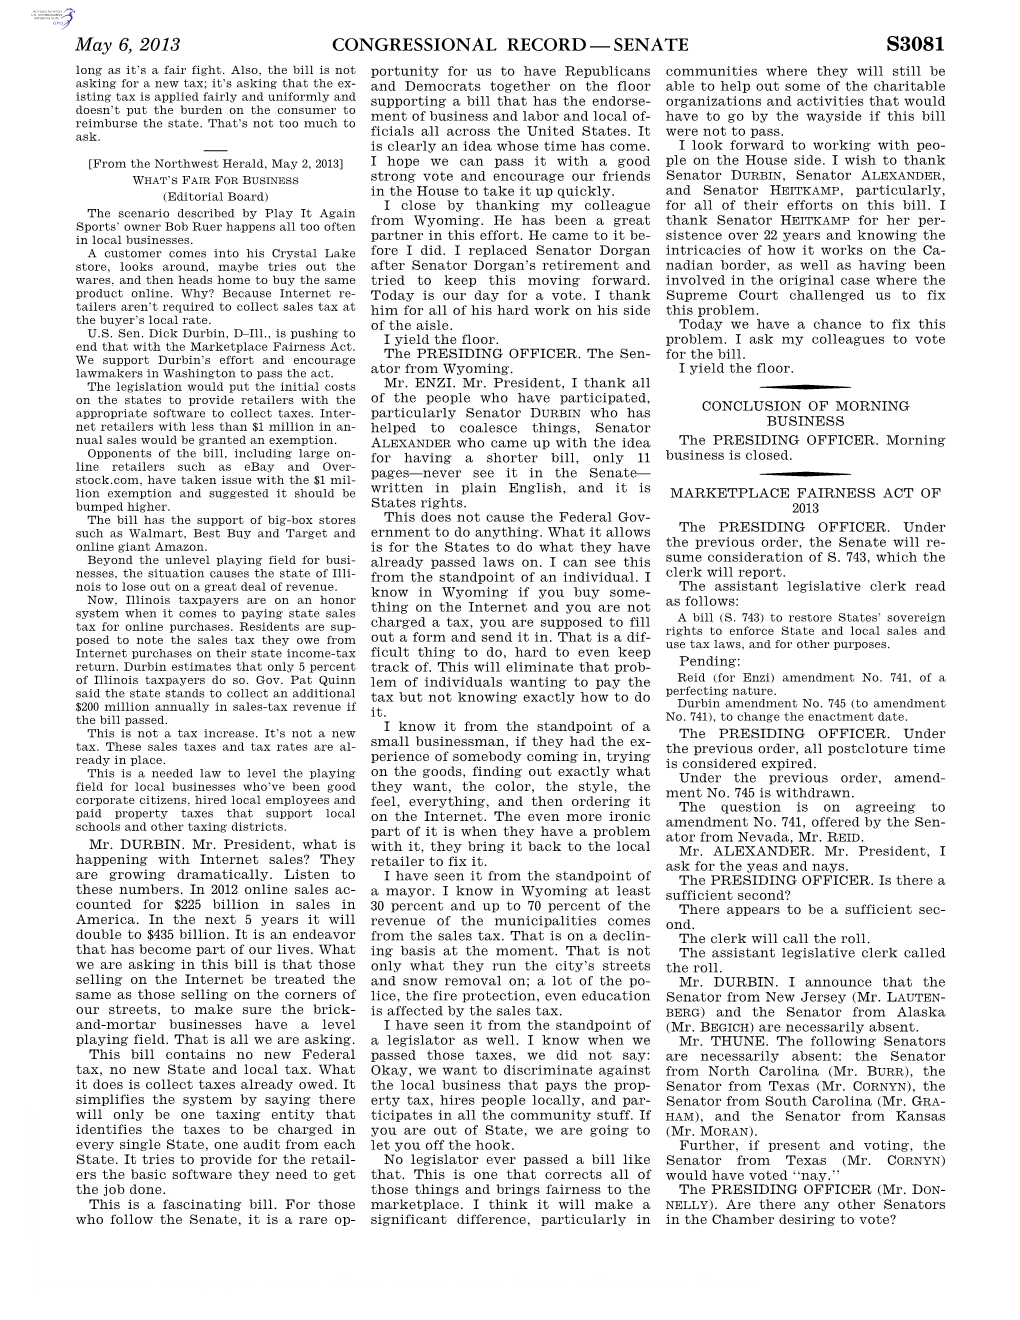 Congressional Record—Senate S3081